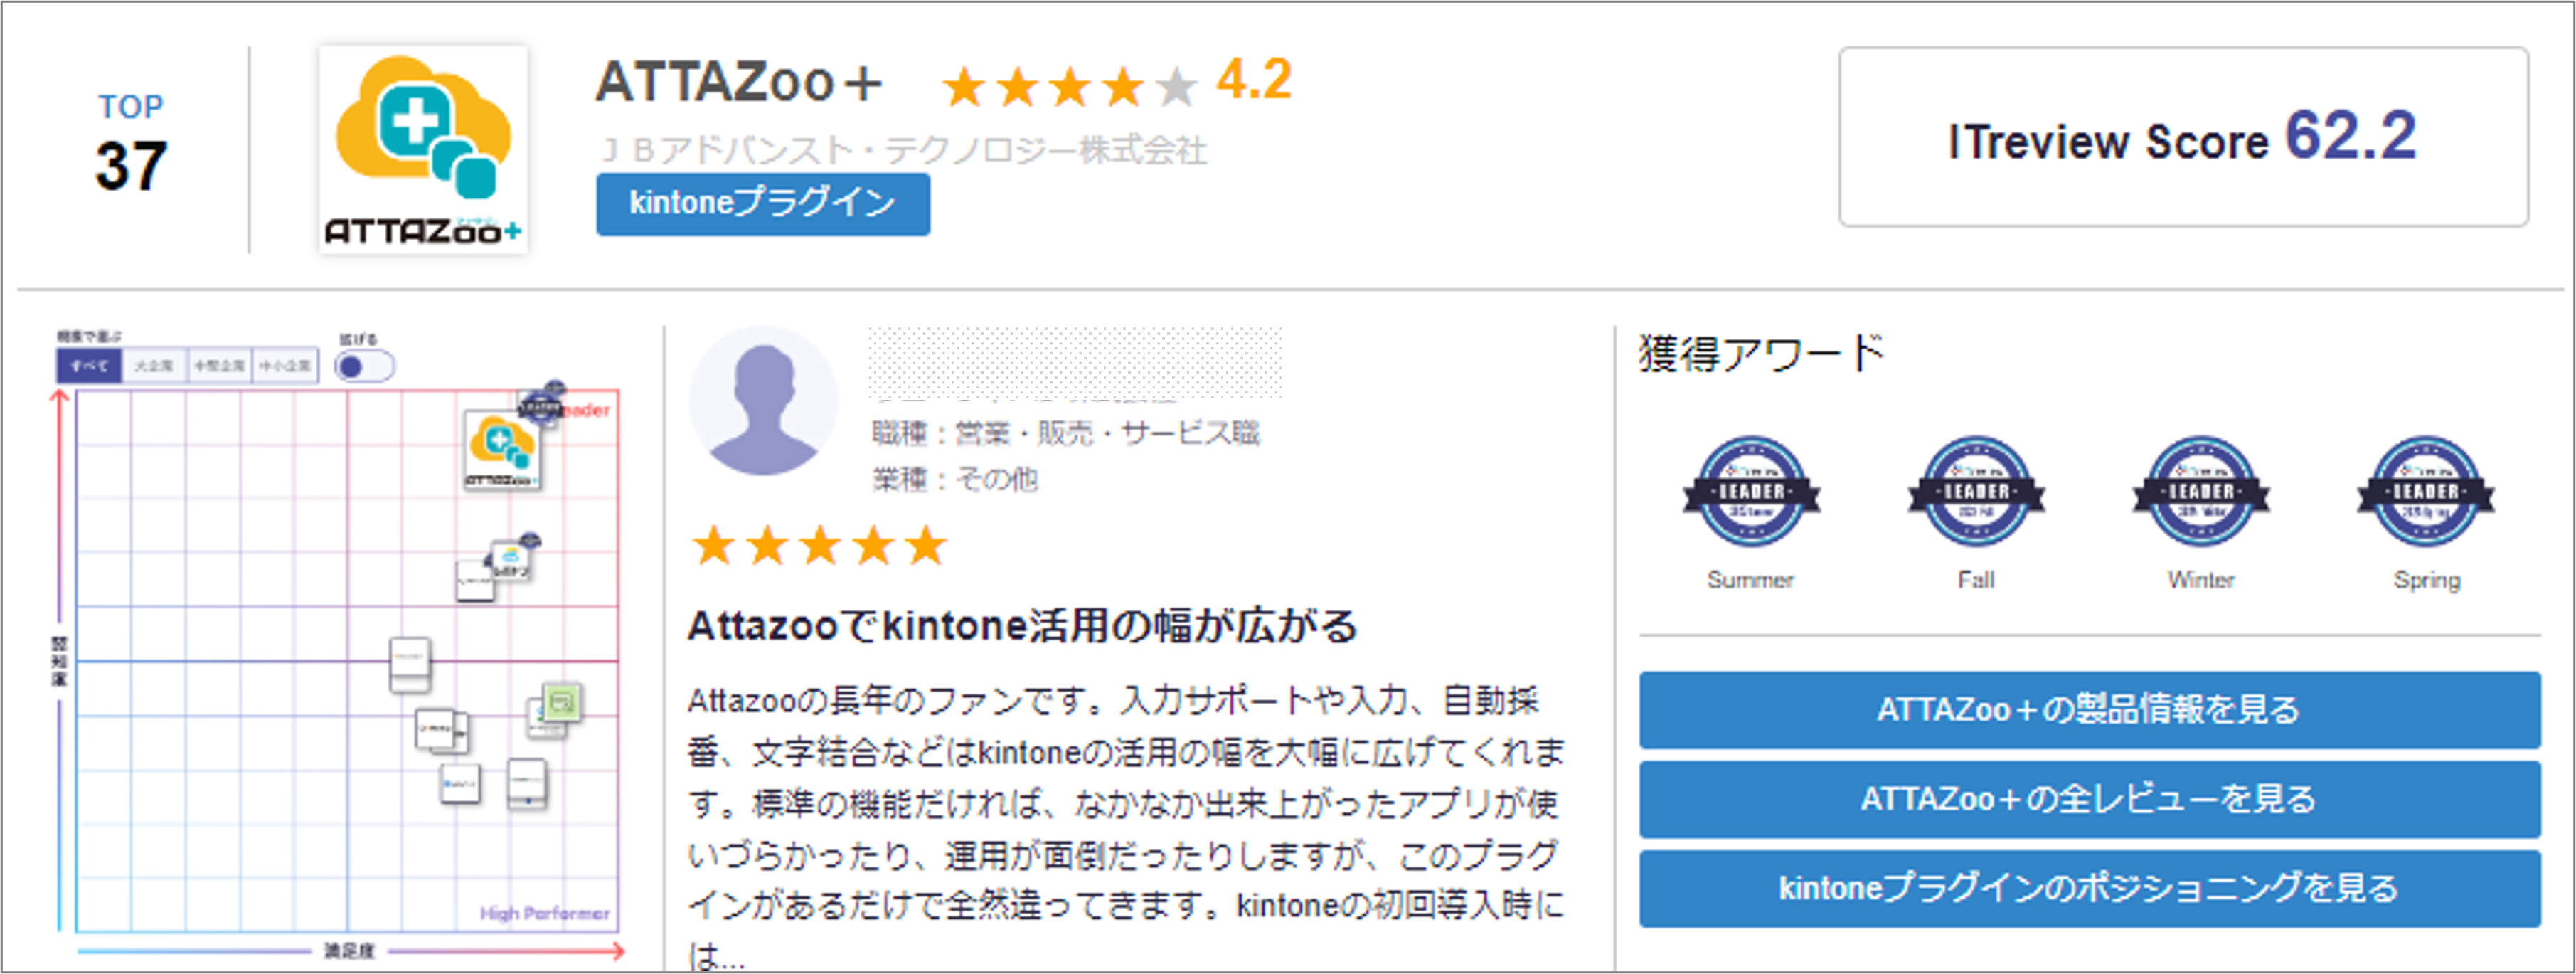 ia`sATTAZoo+AuITreview Best Software in Japan 2024vŃrWlX[U[]NTOP 50ɑIo